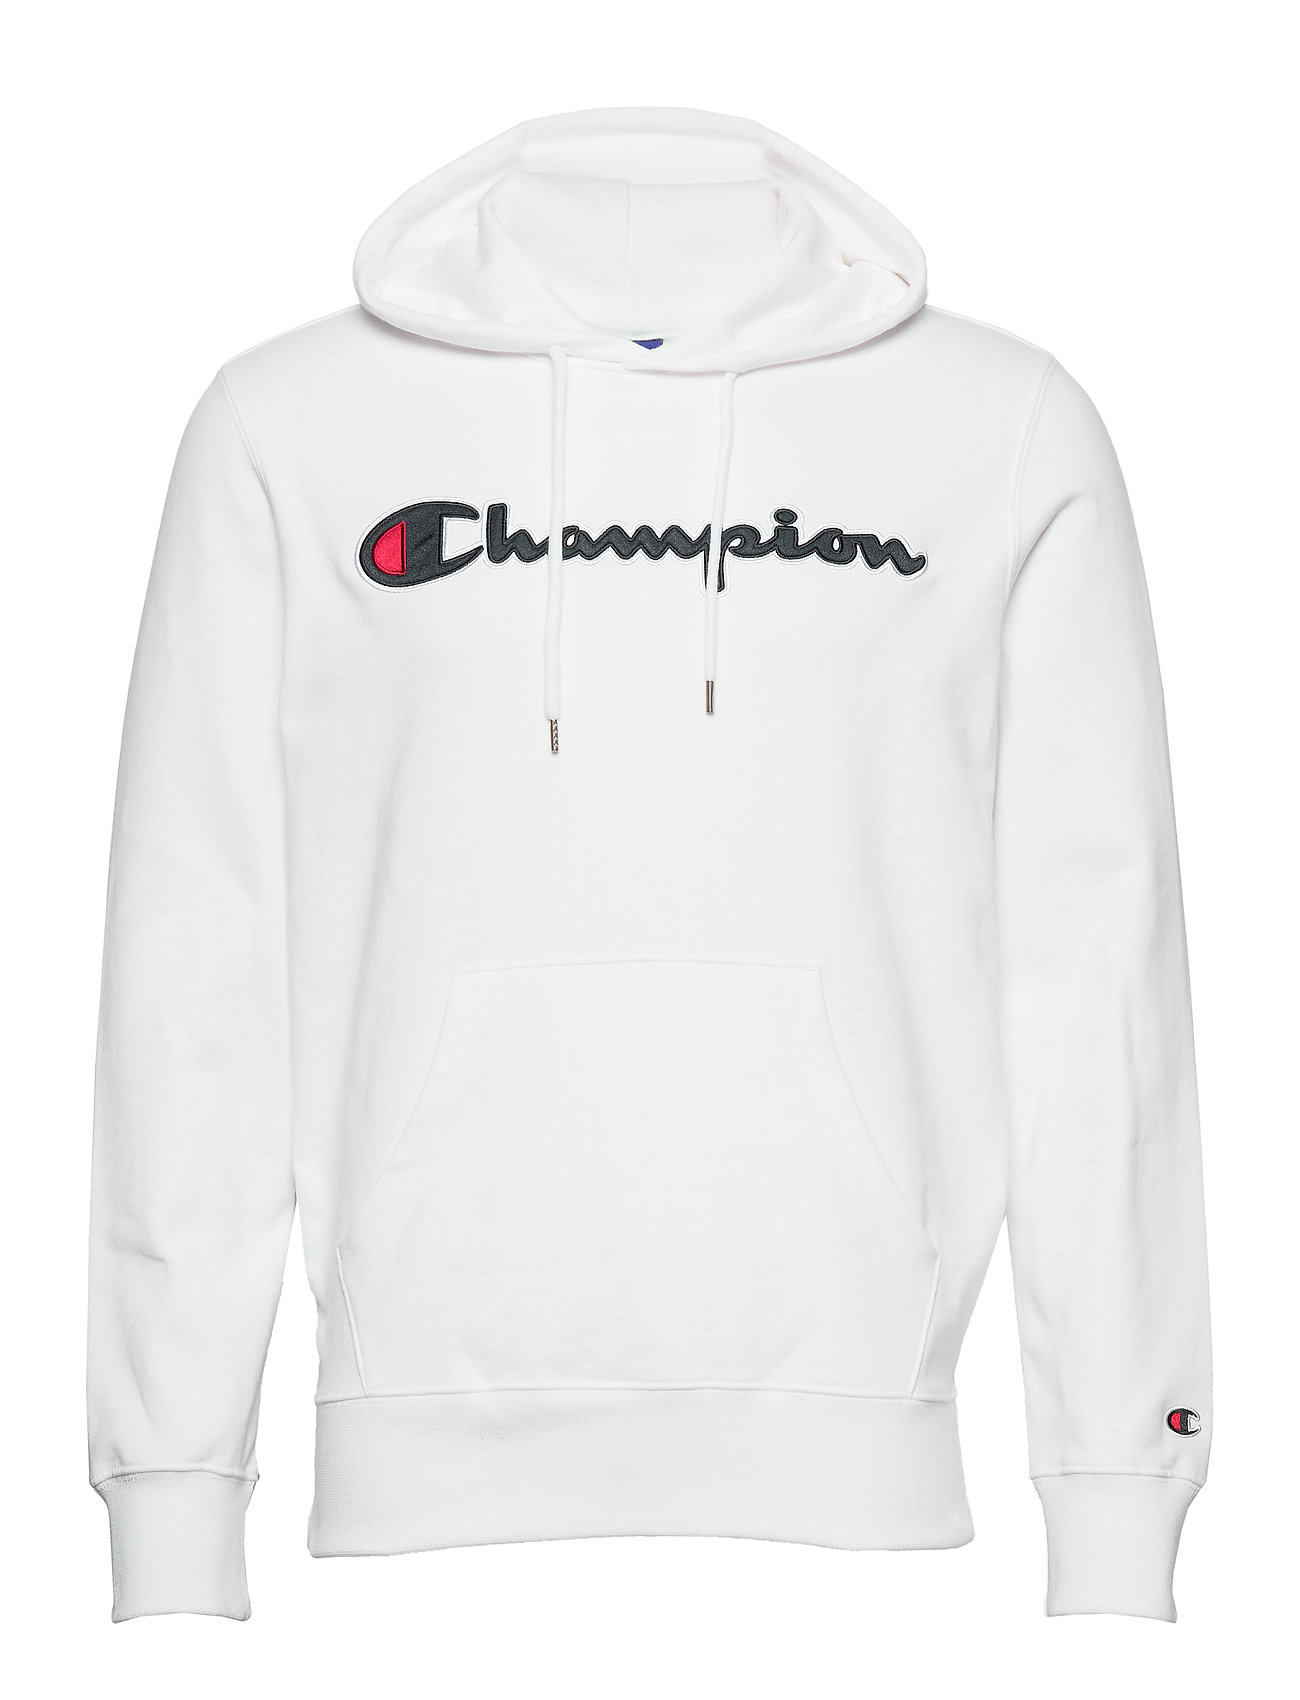 Champion Hooded Sweatshirt (White), (49 